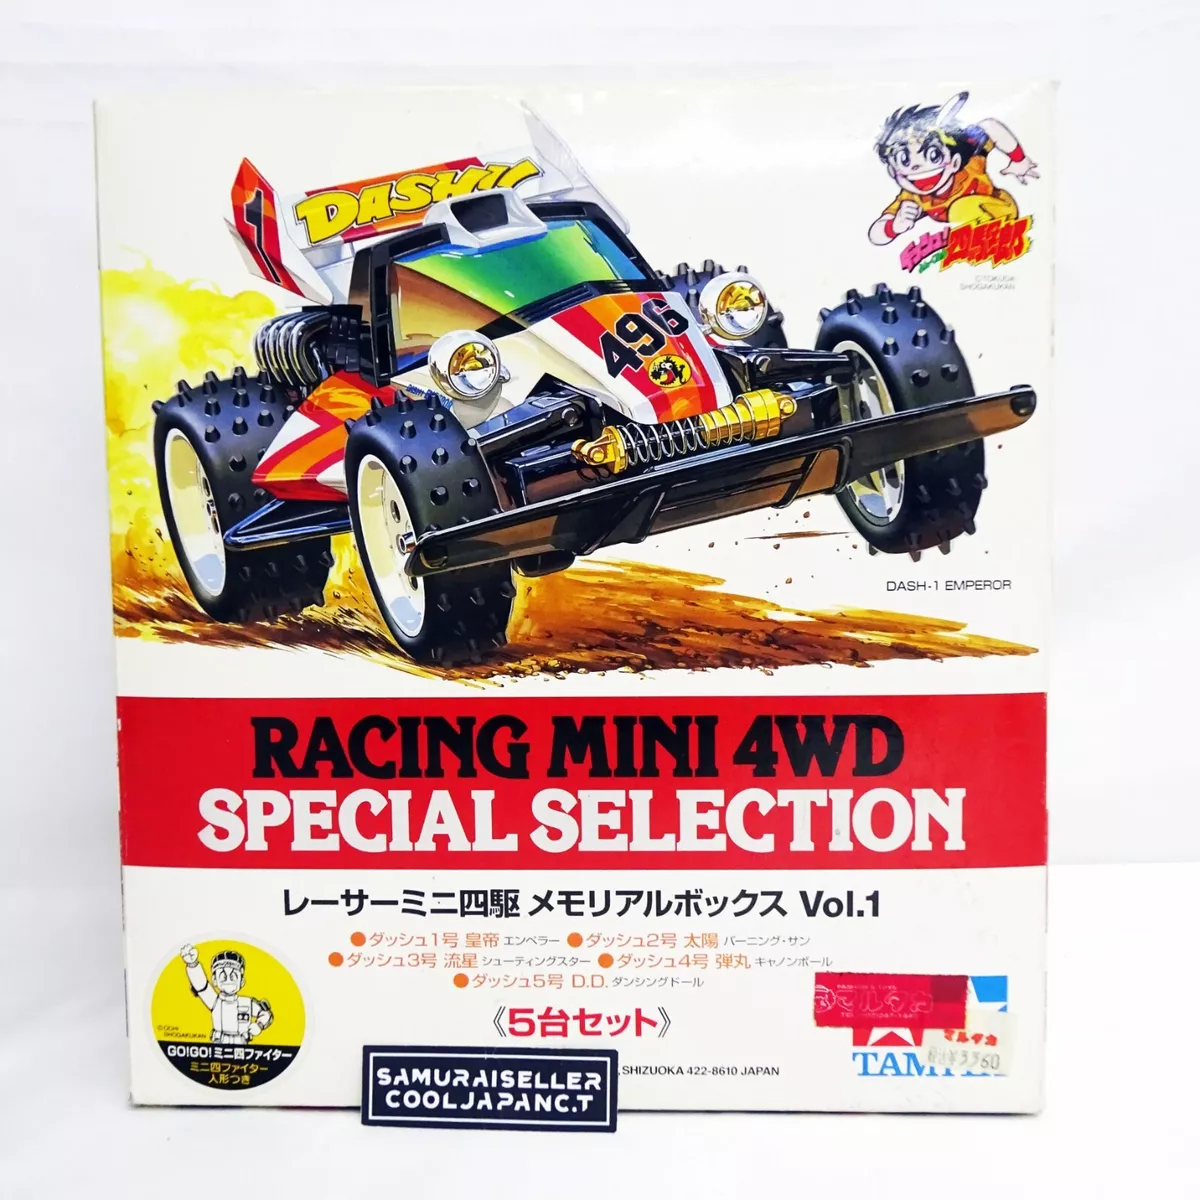 NEW TAMIYA Racer Mini 4WD Memorial Box Vol.1 DASH Emperor Burning